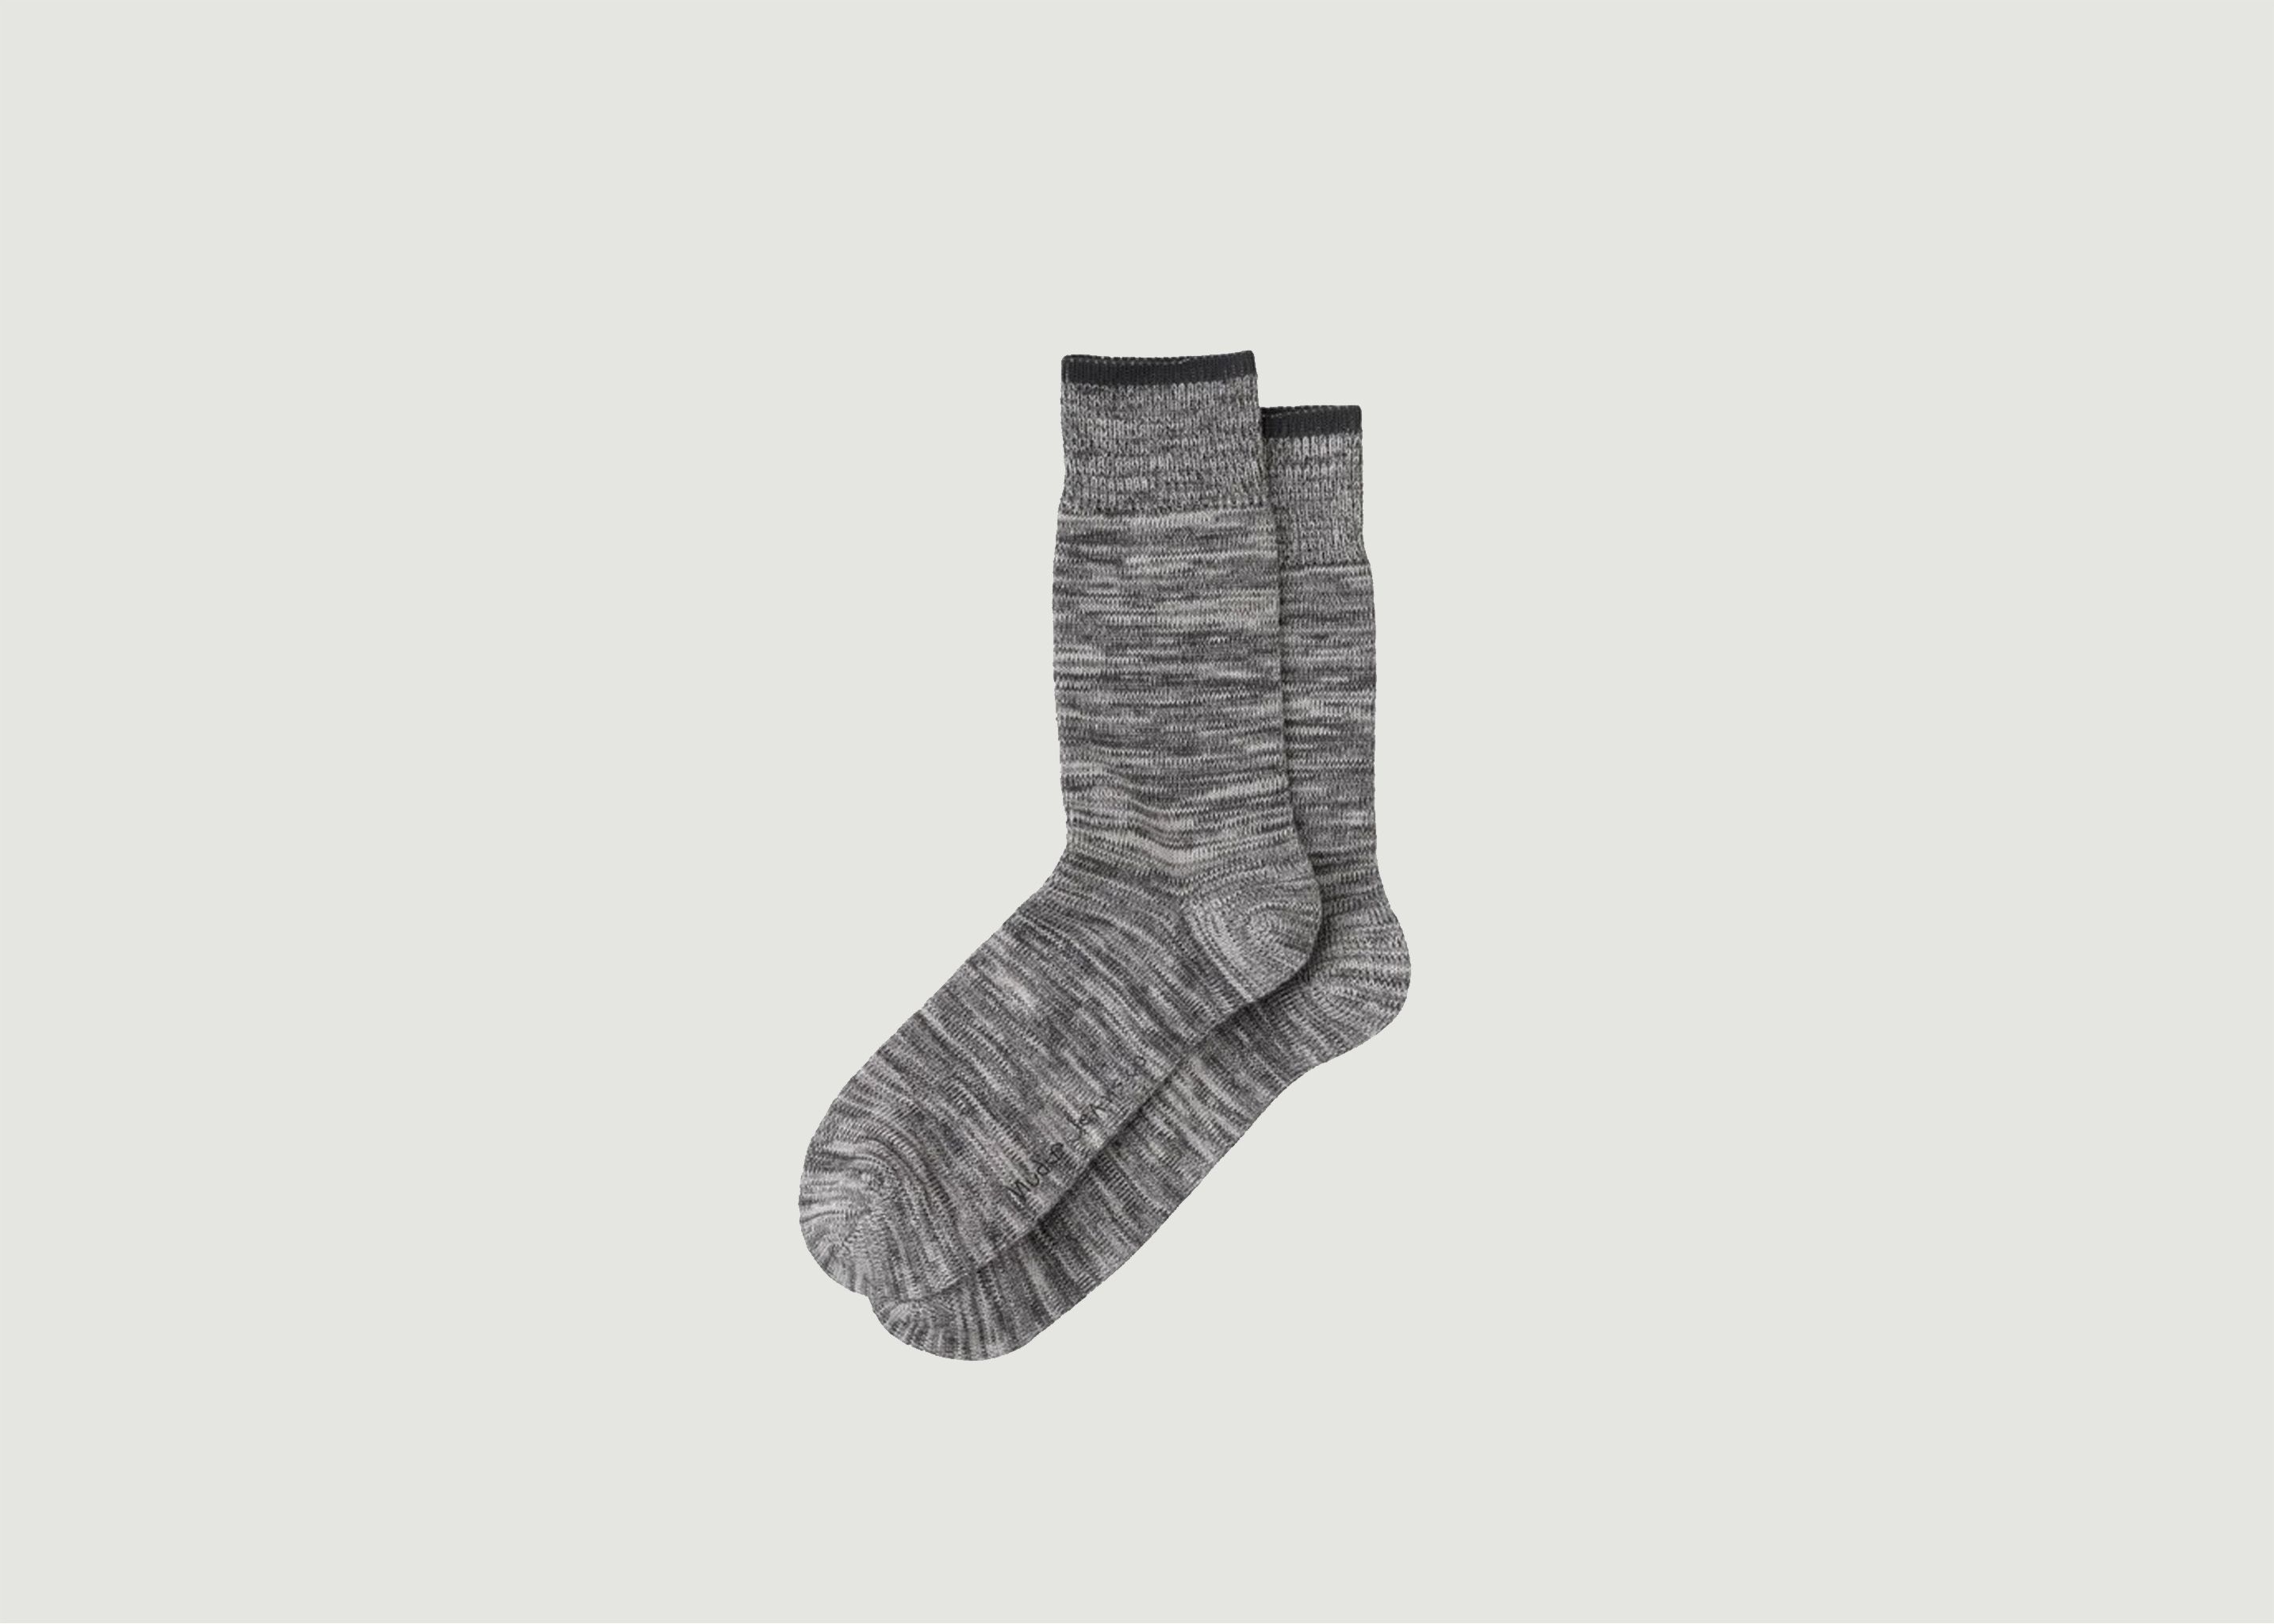 Rasmusson Socks - Nudie Jeans